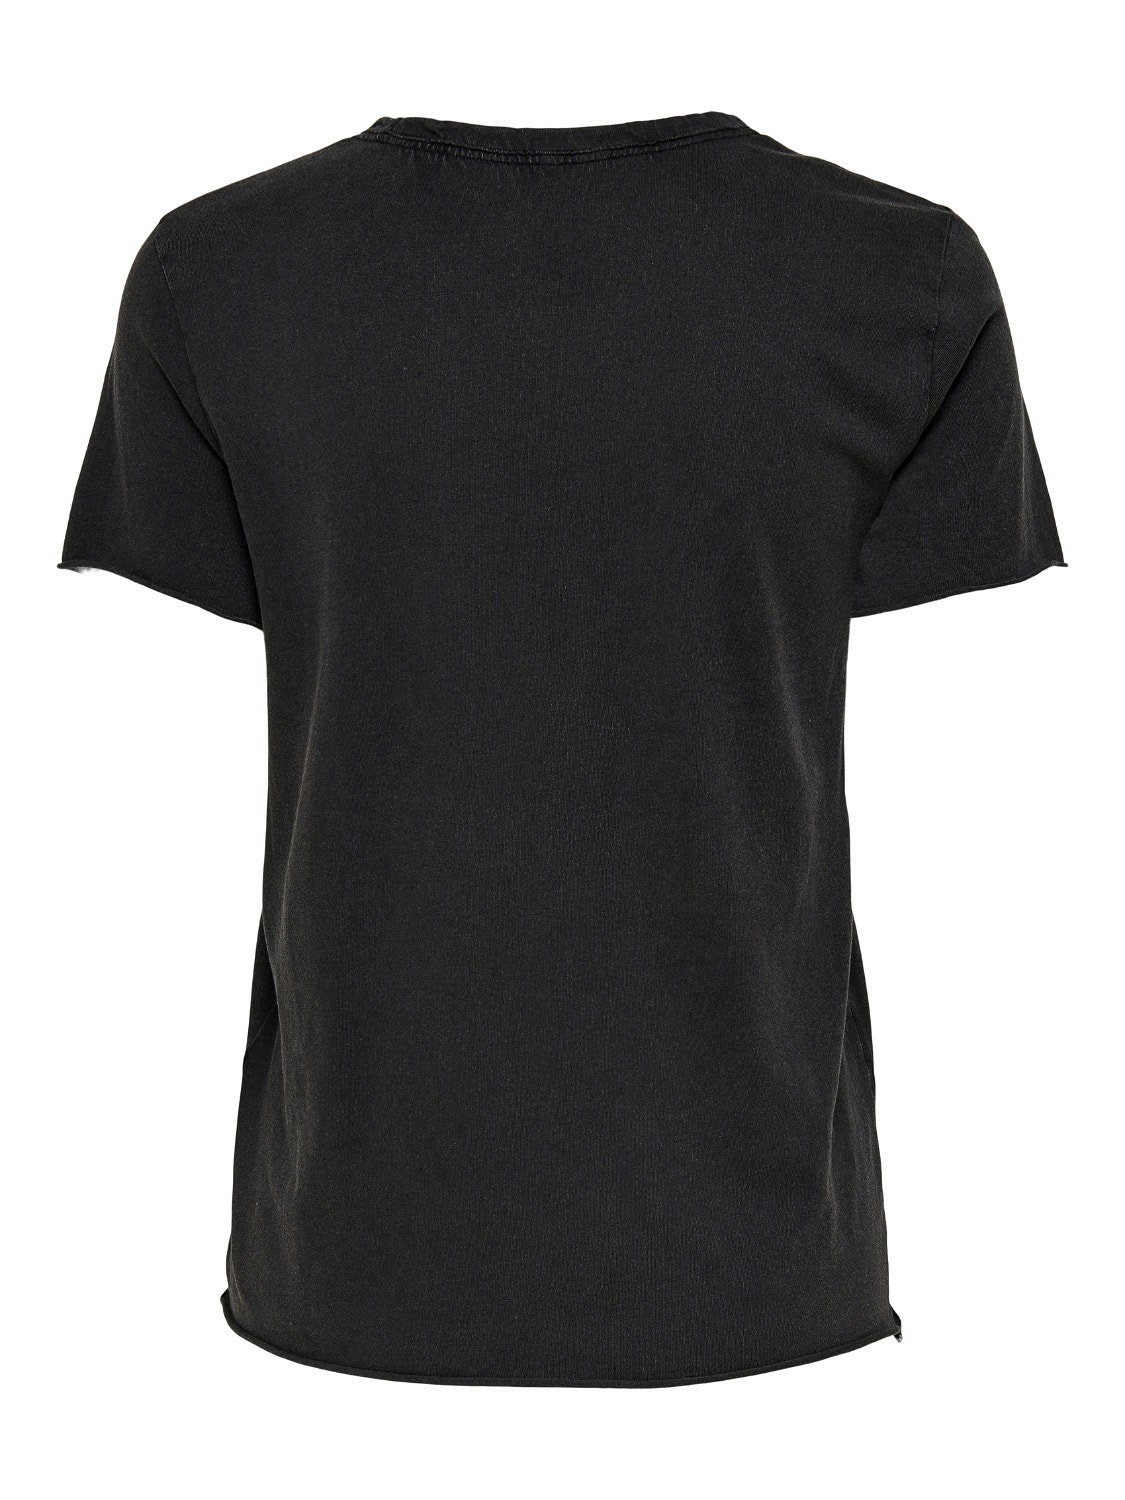 ONLY Print T-Shirt -Black - 15215721